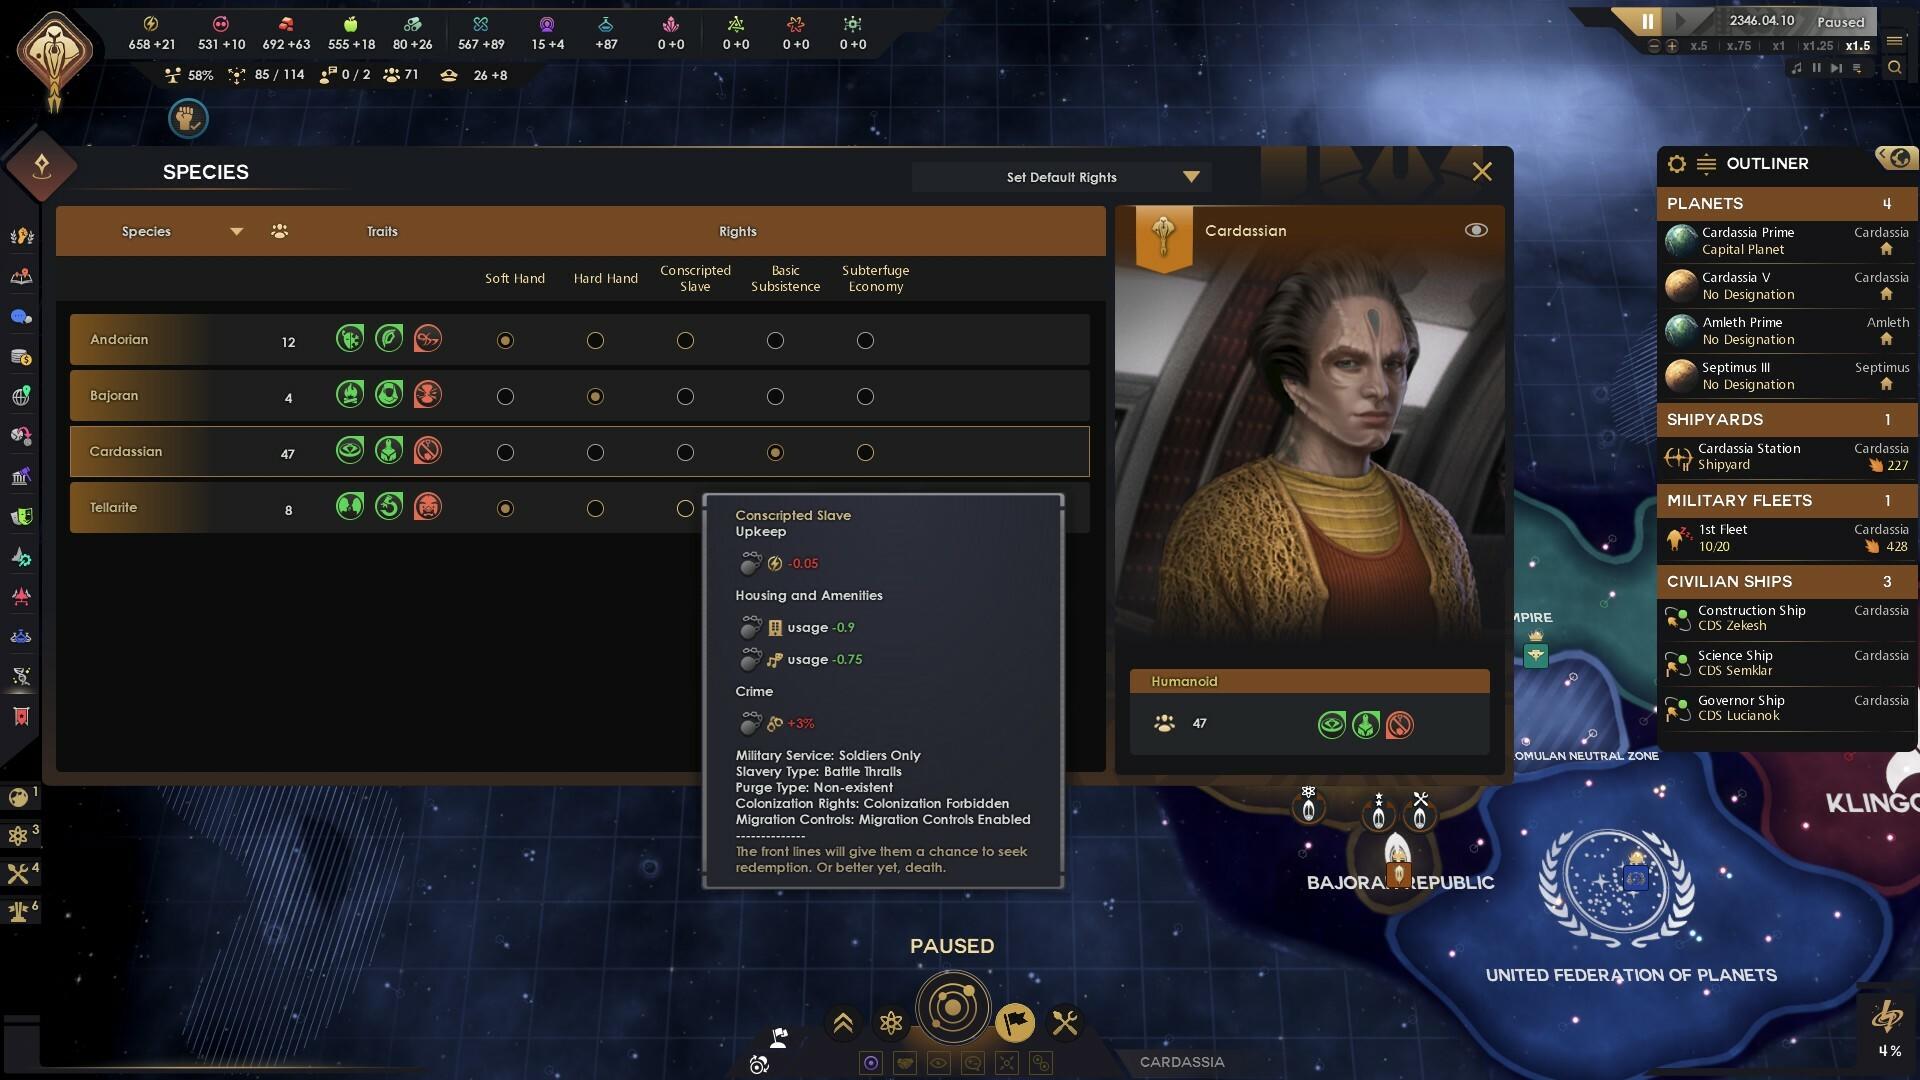 Star Trek: Infinite screenshot game